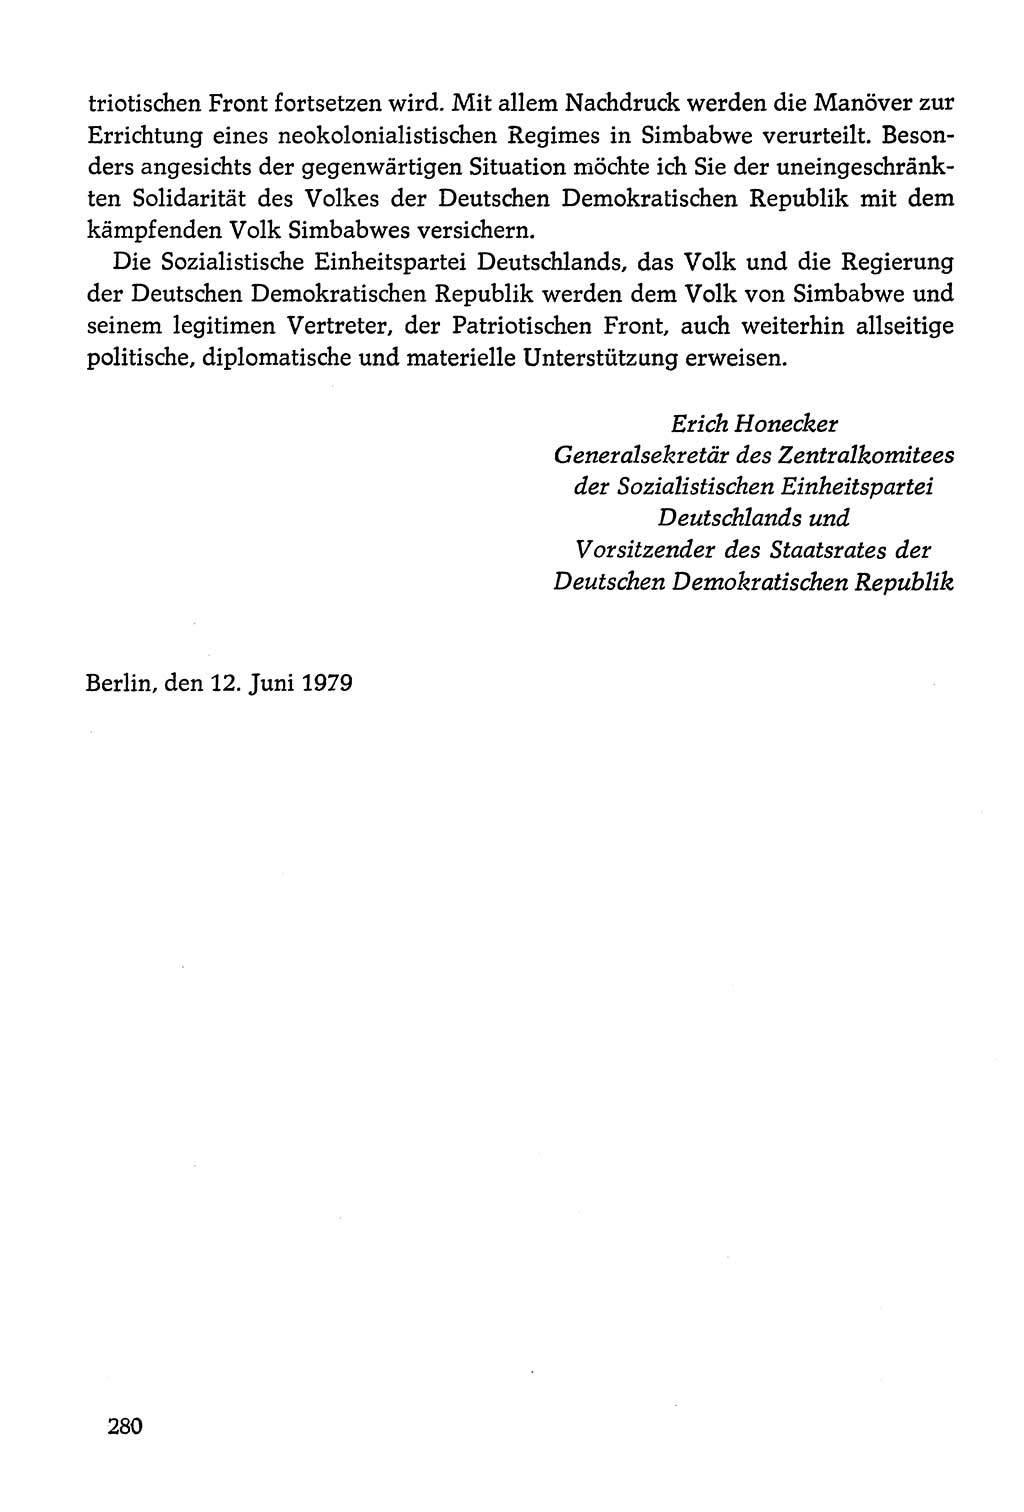 Dokumente der Sozialistischen Einheitspartei Deutschlands (SED) [Deutsche Demokratische Republik (DDR)] 1978-1979, Seite 280 (Dok. SED DDR 1978-1979, S. 280)